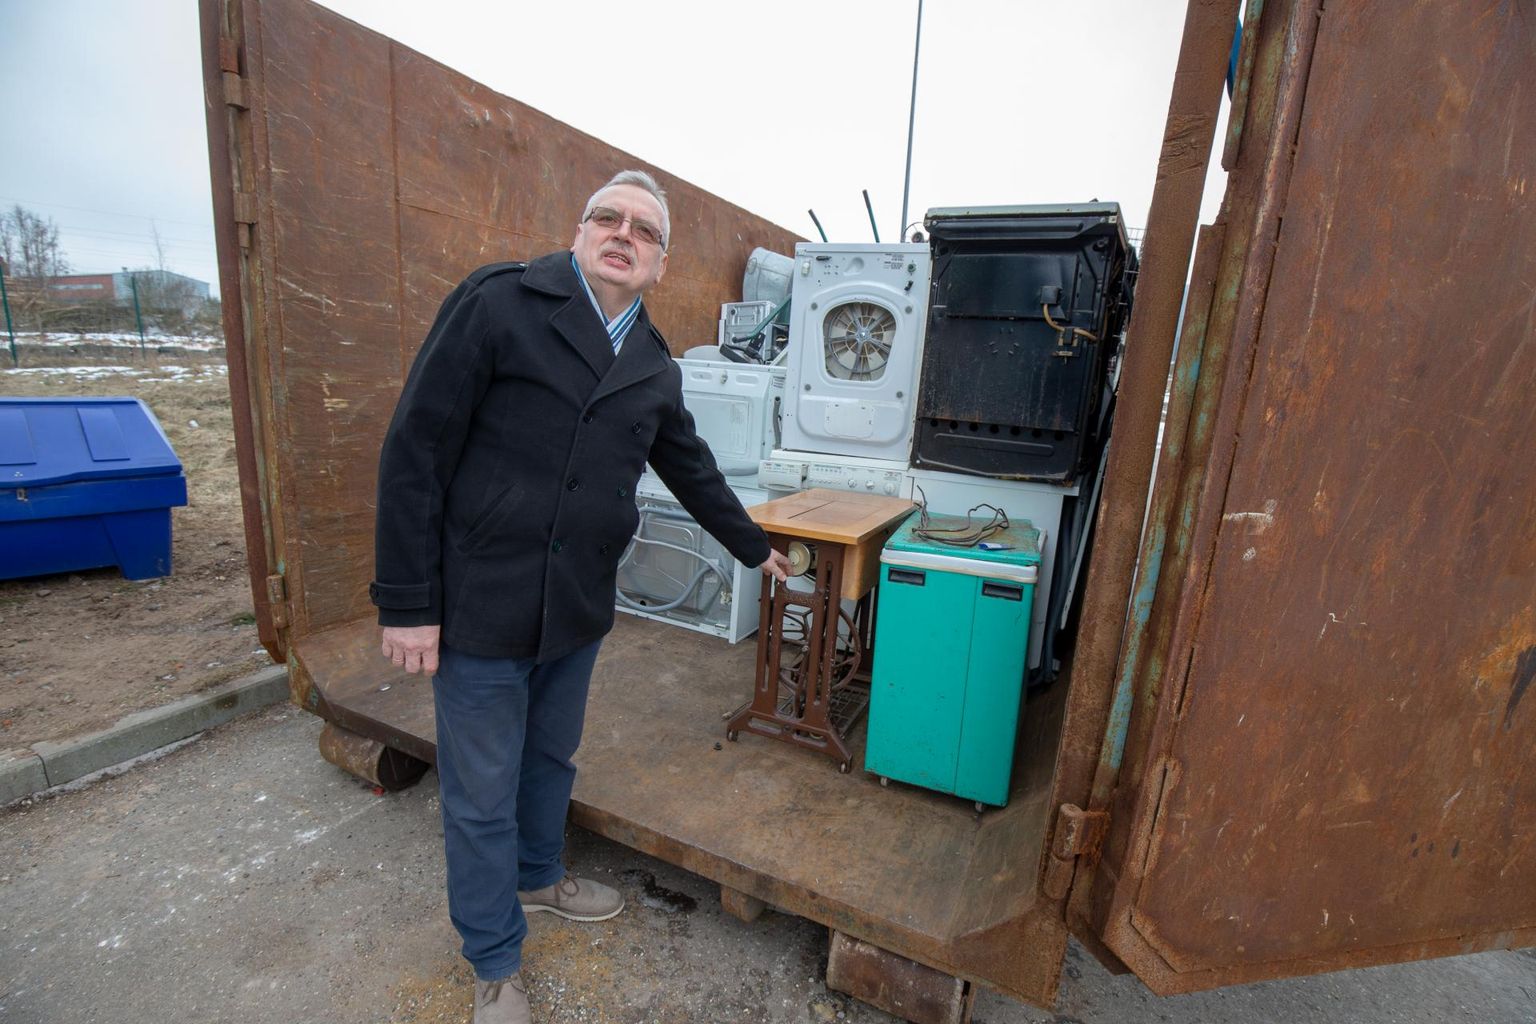 Selli tänava jäätmejaamas käinud Tartu linnamajandusosakonna juhataja Rein Haak leidis konteinerist teiste kodumasinate hulgast ka jalaga sõtkutava õmblusmasina.